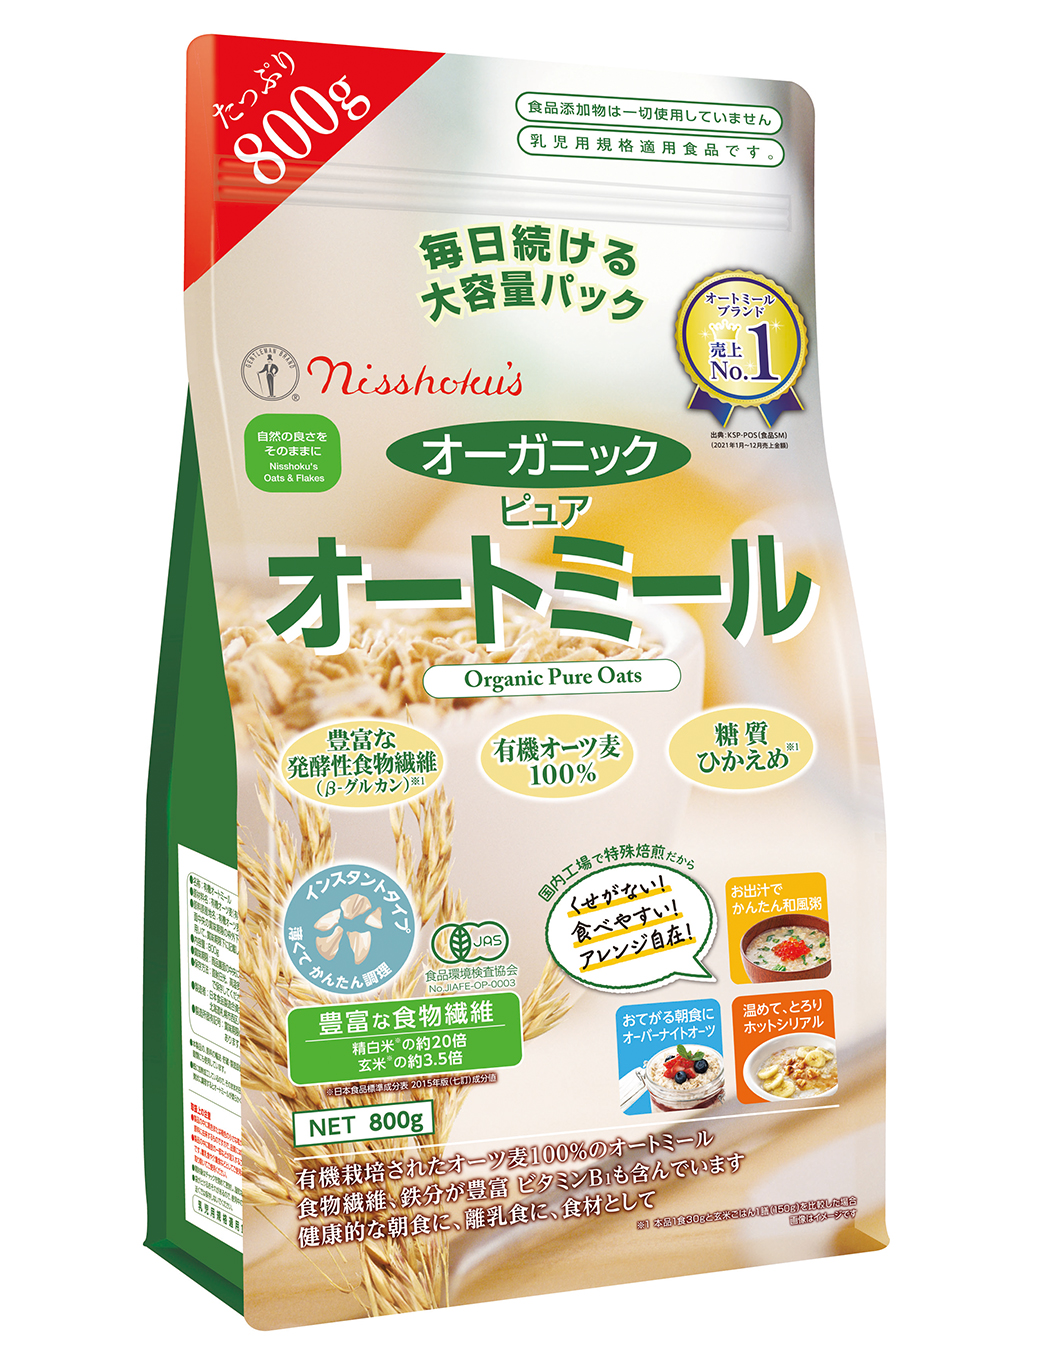 日食オーガニックピュアオートミール | グラノーラ・コーンフレーク製品の日本食品製造合資会社